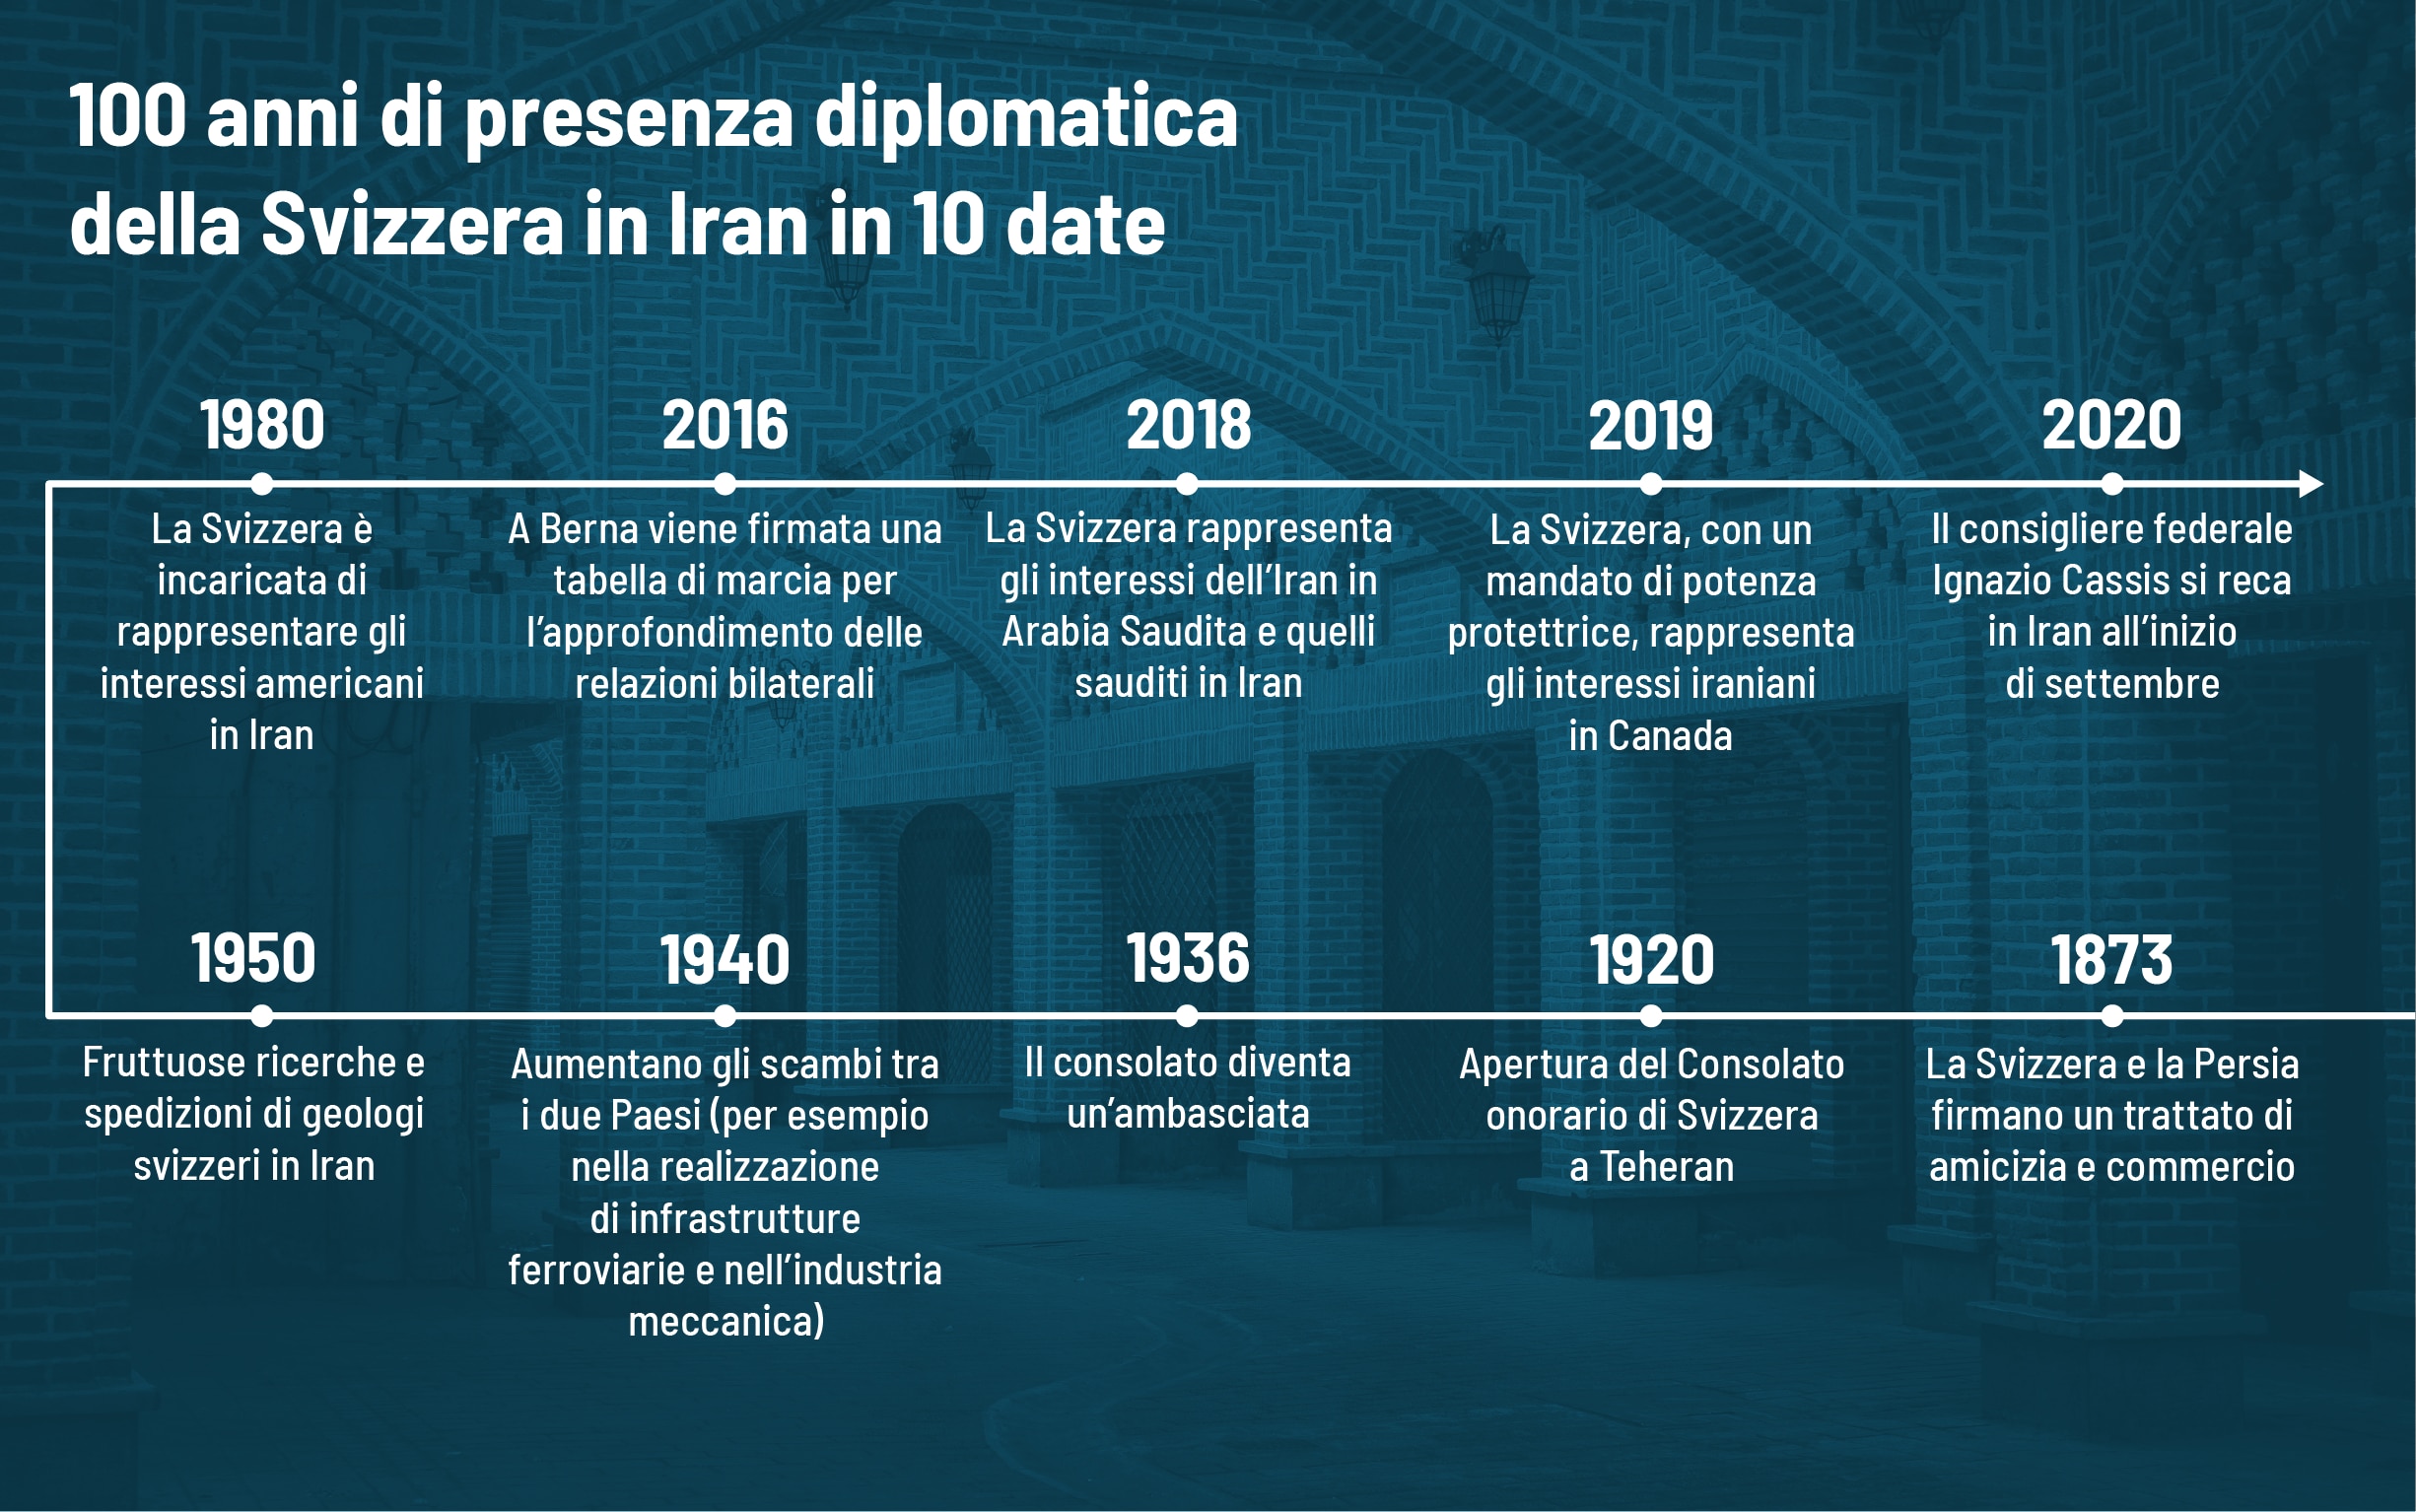 Infographica sui 100 anni di presenza diplomatica della Svizzera in Iran in 10 date.